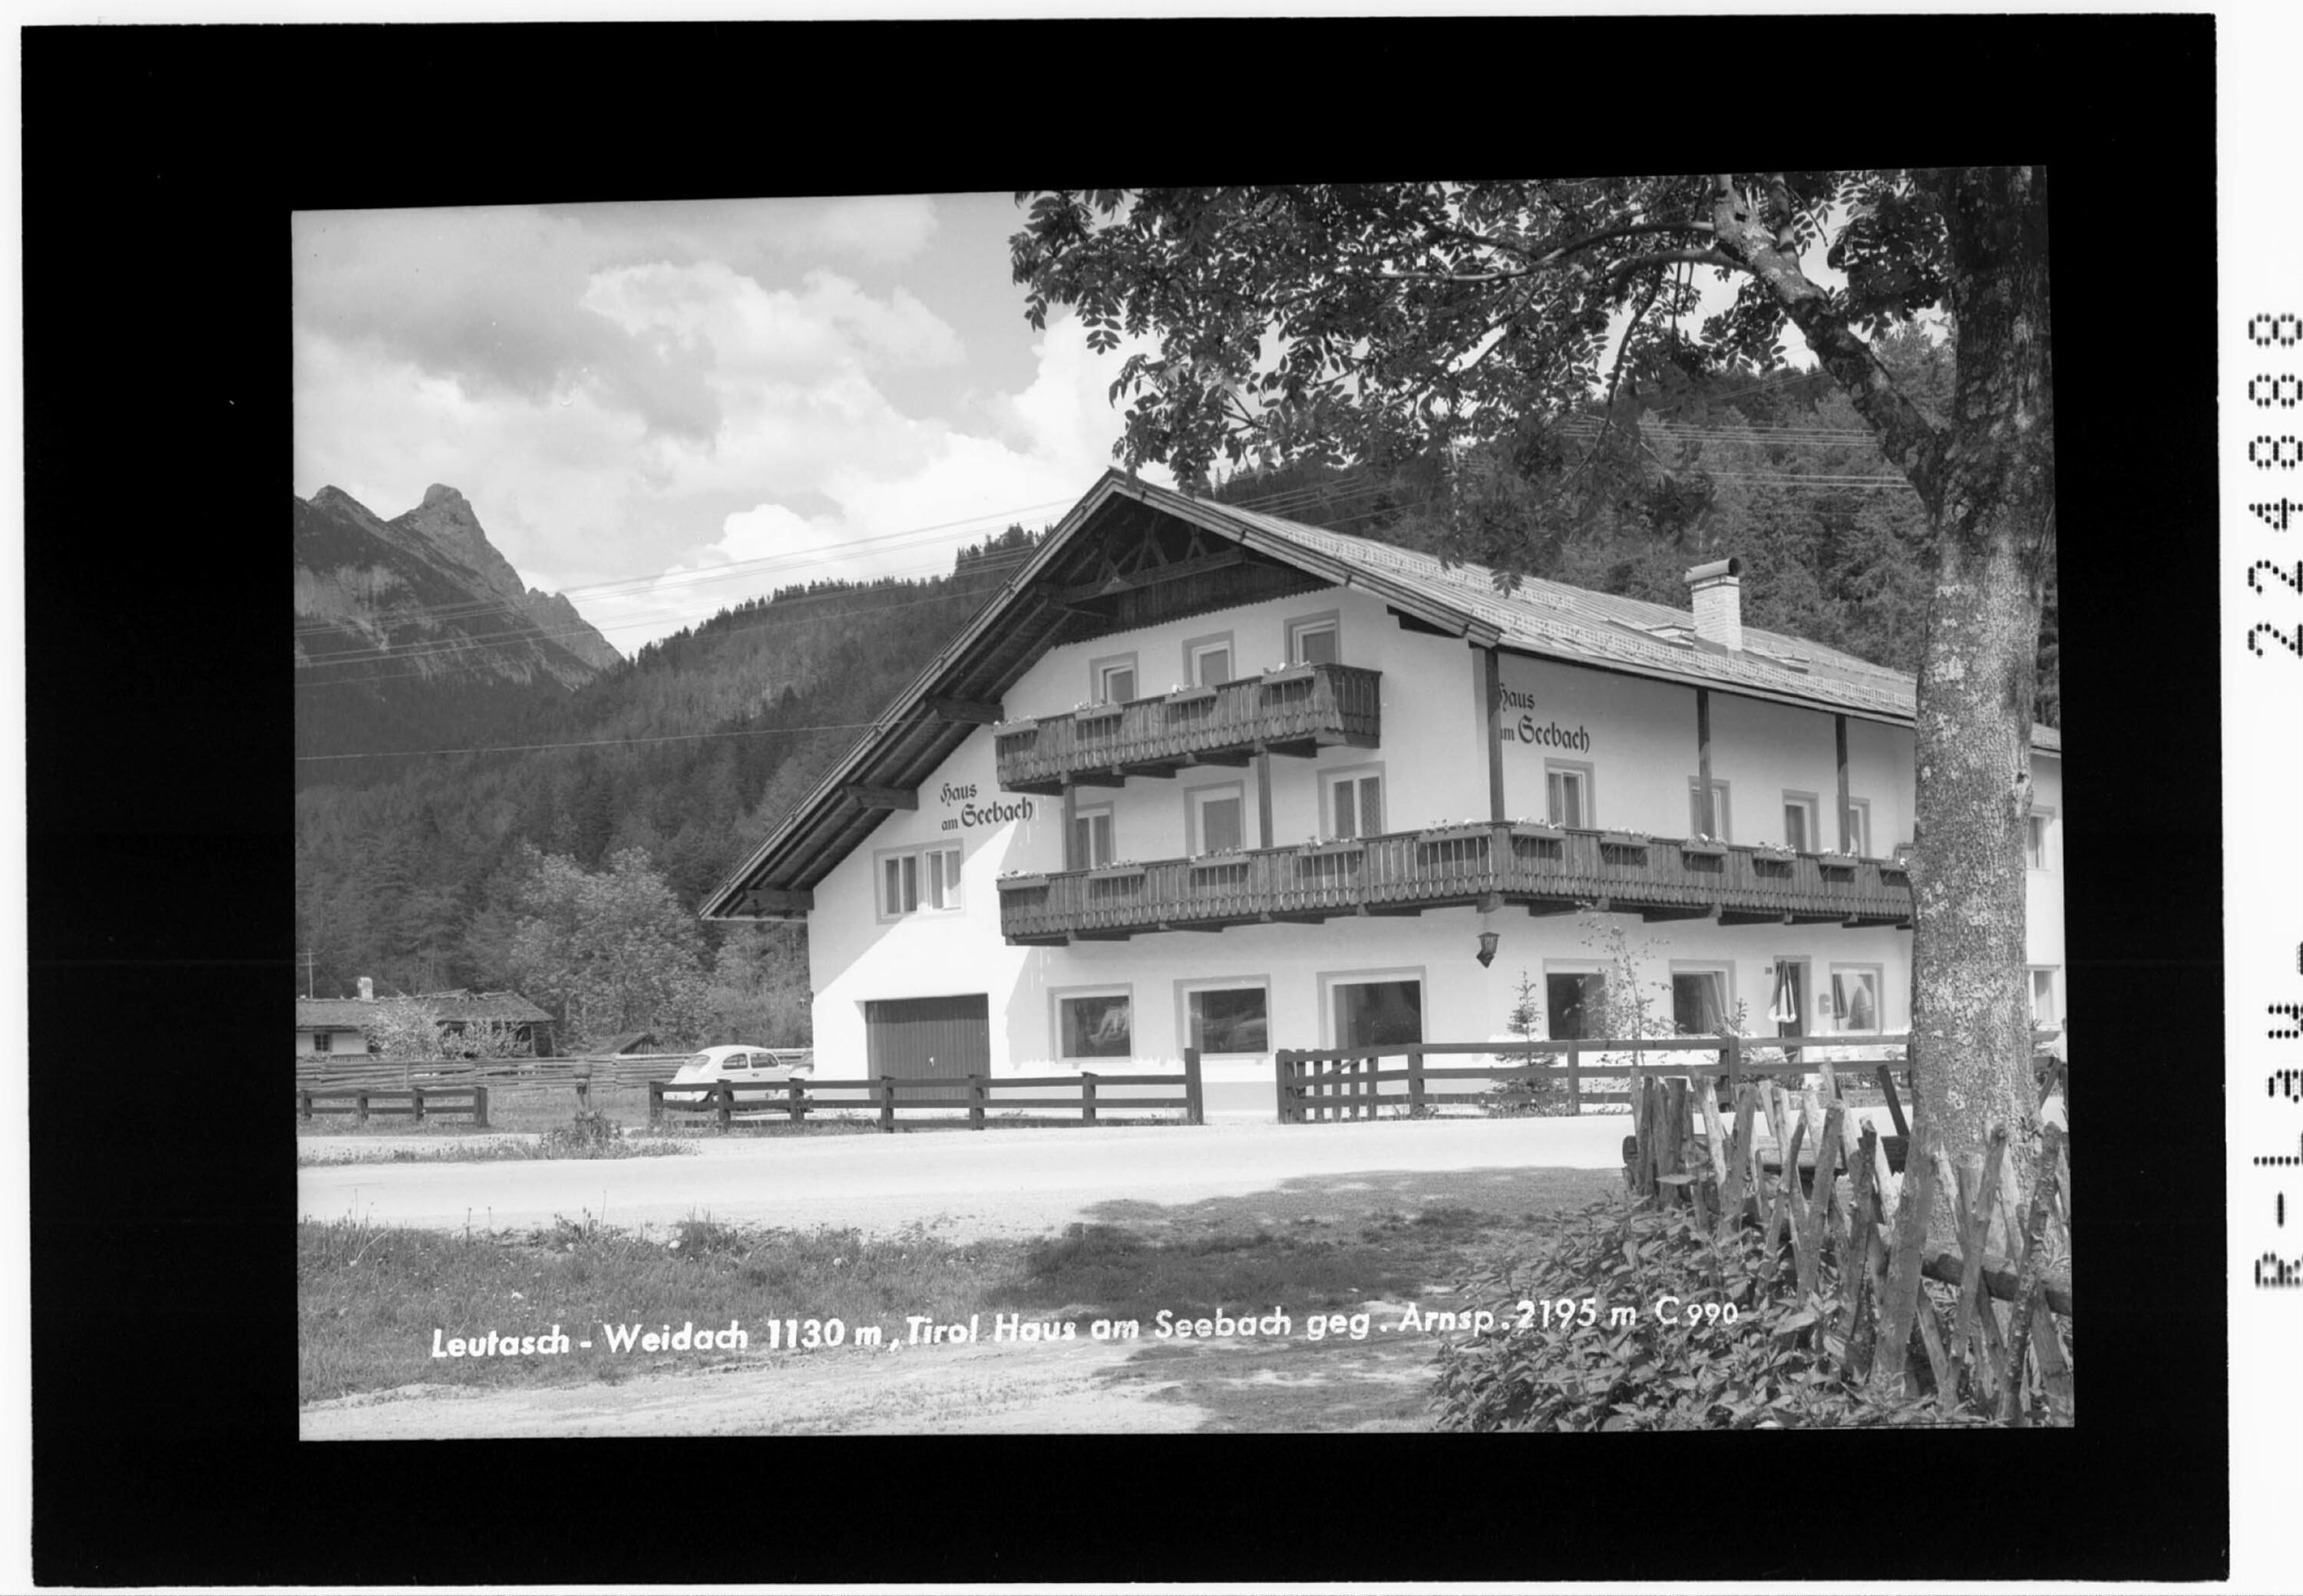 Leutasch - Weidach 1130 m / Tirol / Haus am Seebach gegen Arnspitze 2195 m></div>


    <hr>
    <div class=